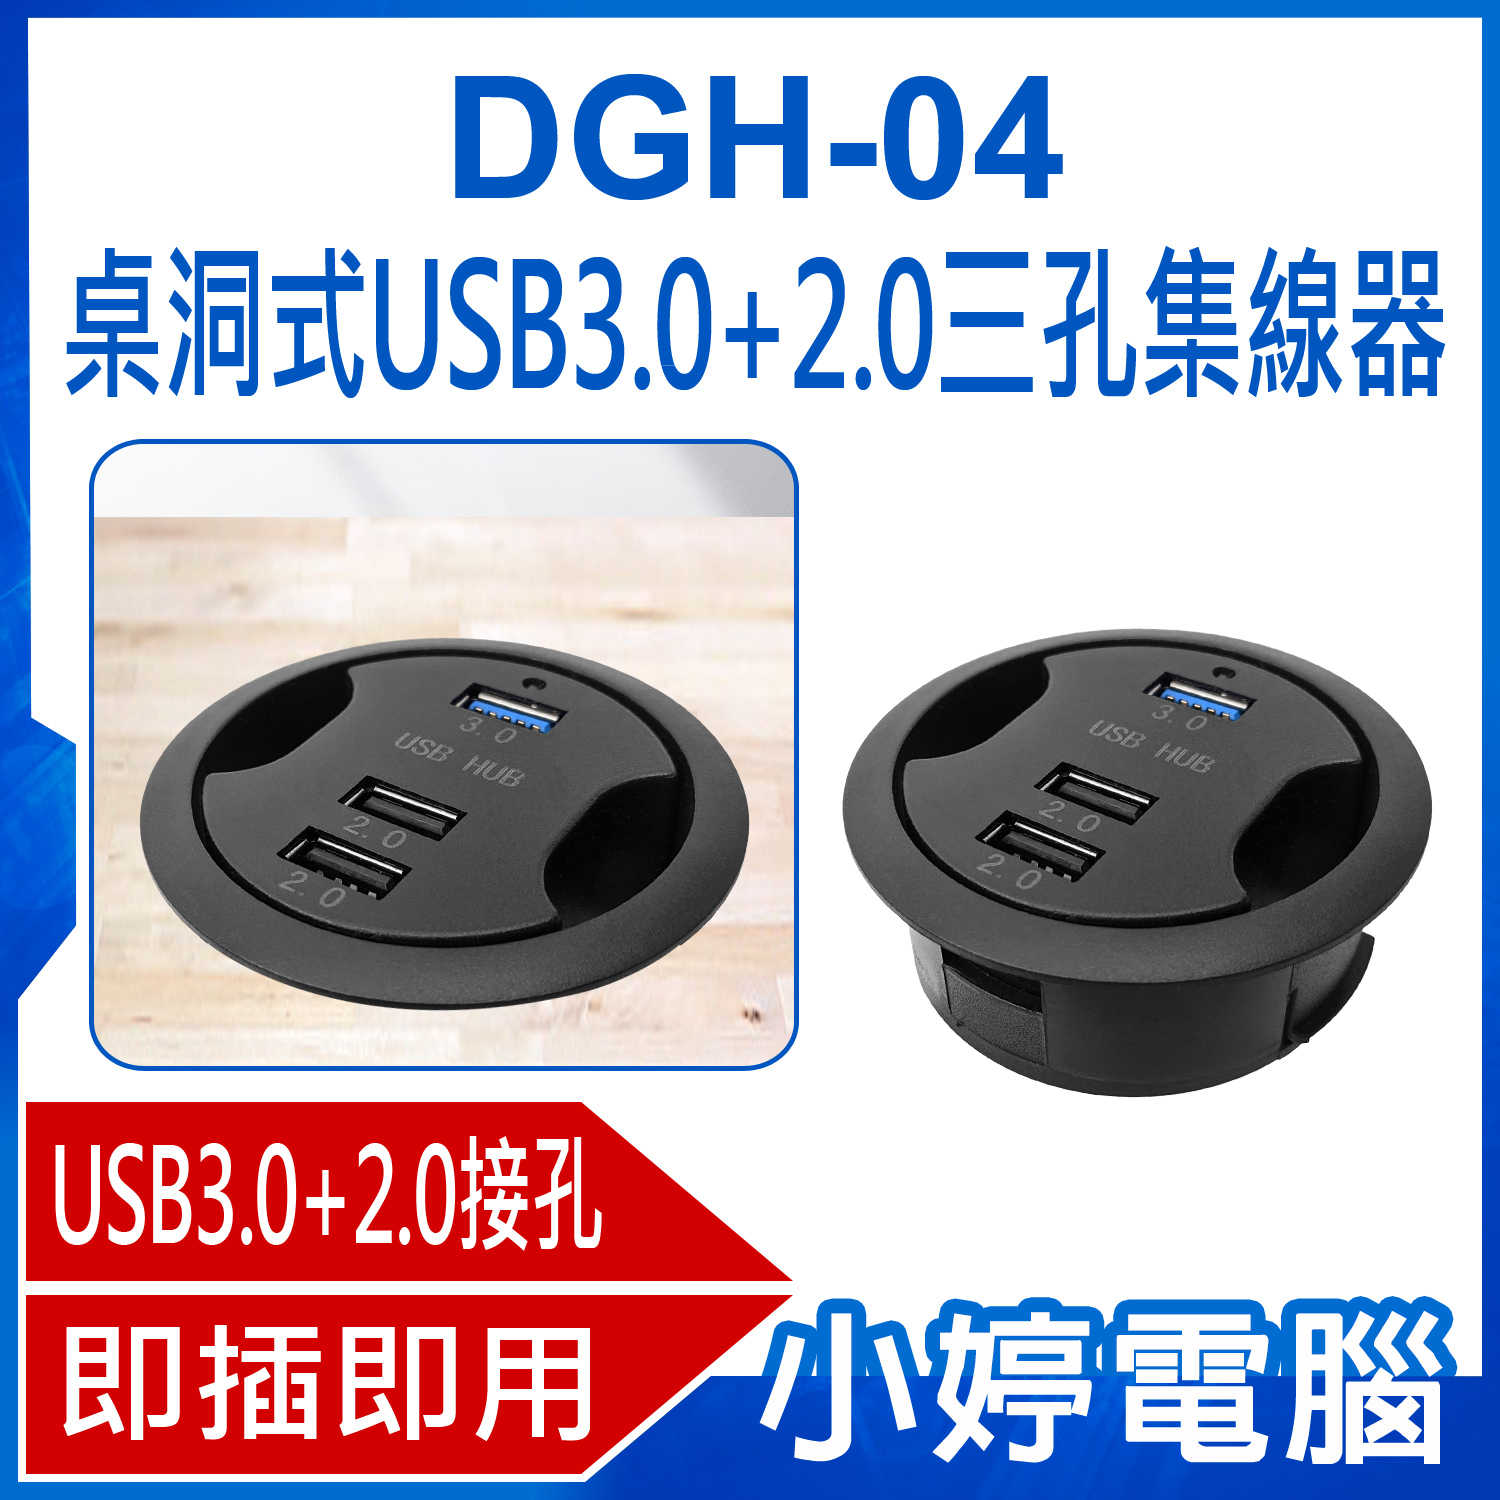 【小婷電腦】DGH-04 桌洞式USB3.0+2.0三孔集線器 免驅動即插即用 HUB延長線 微軟MAC通